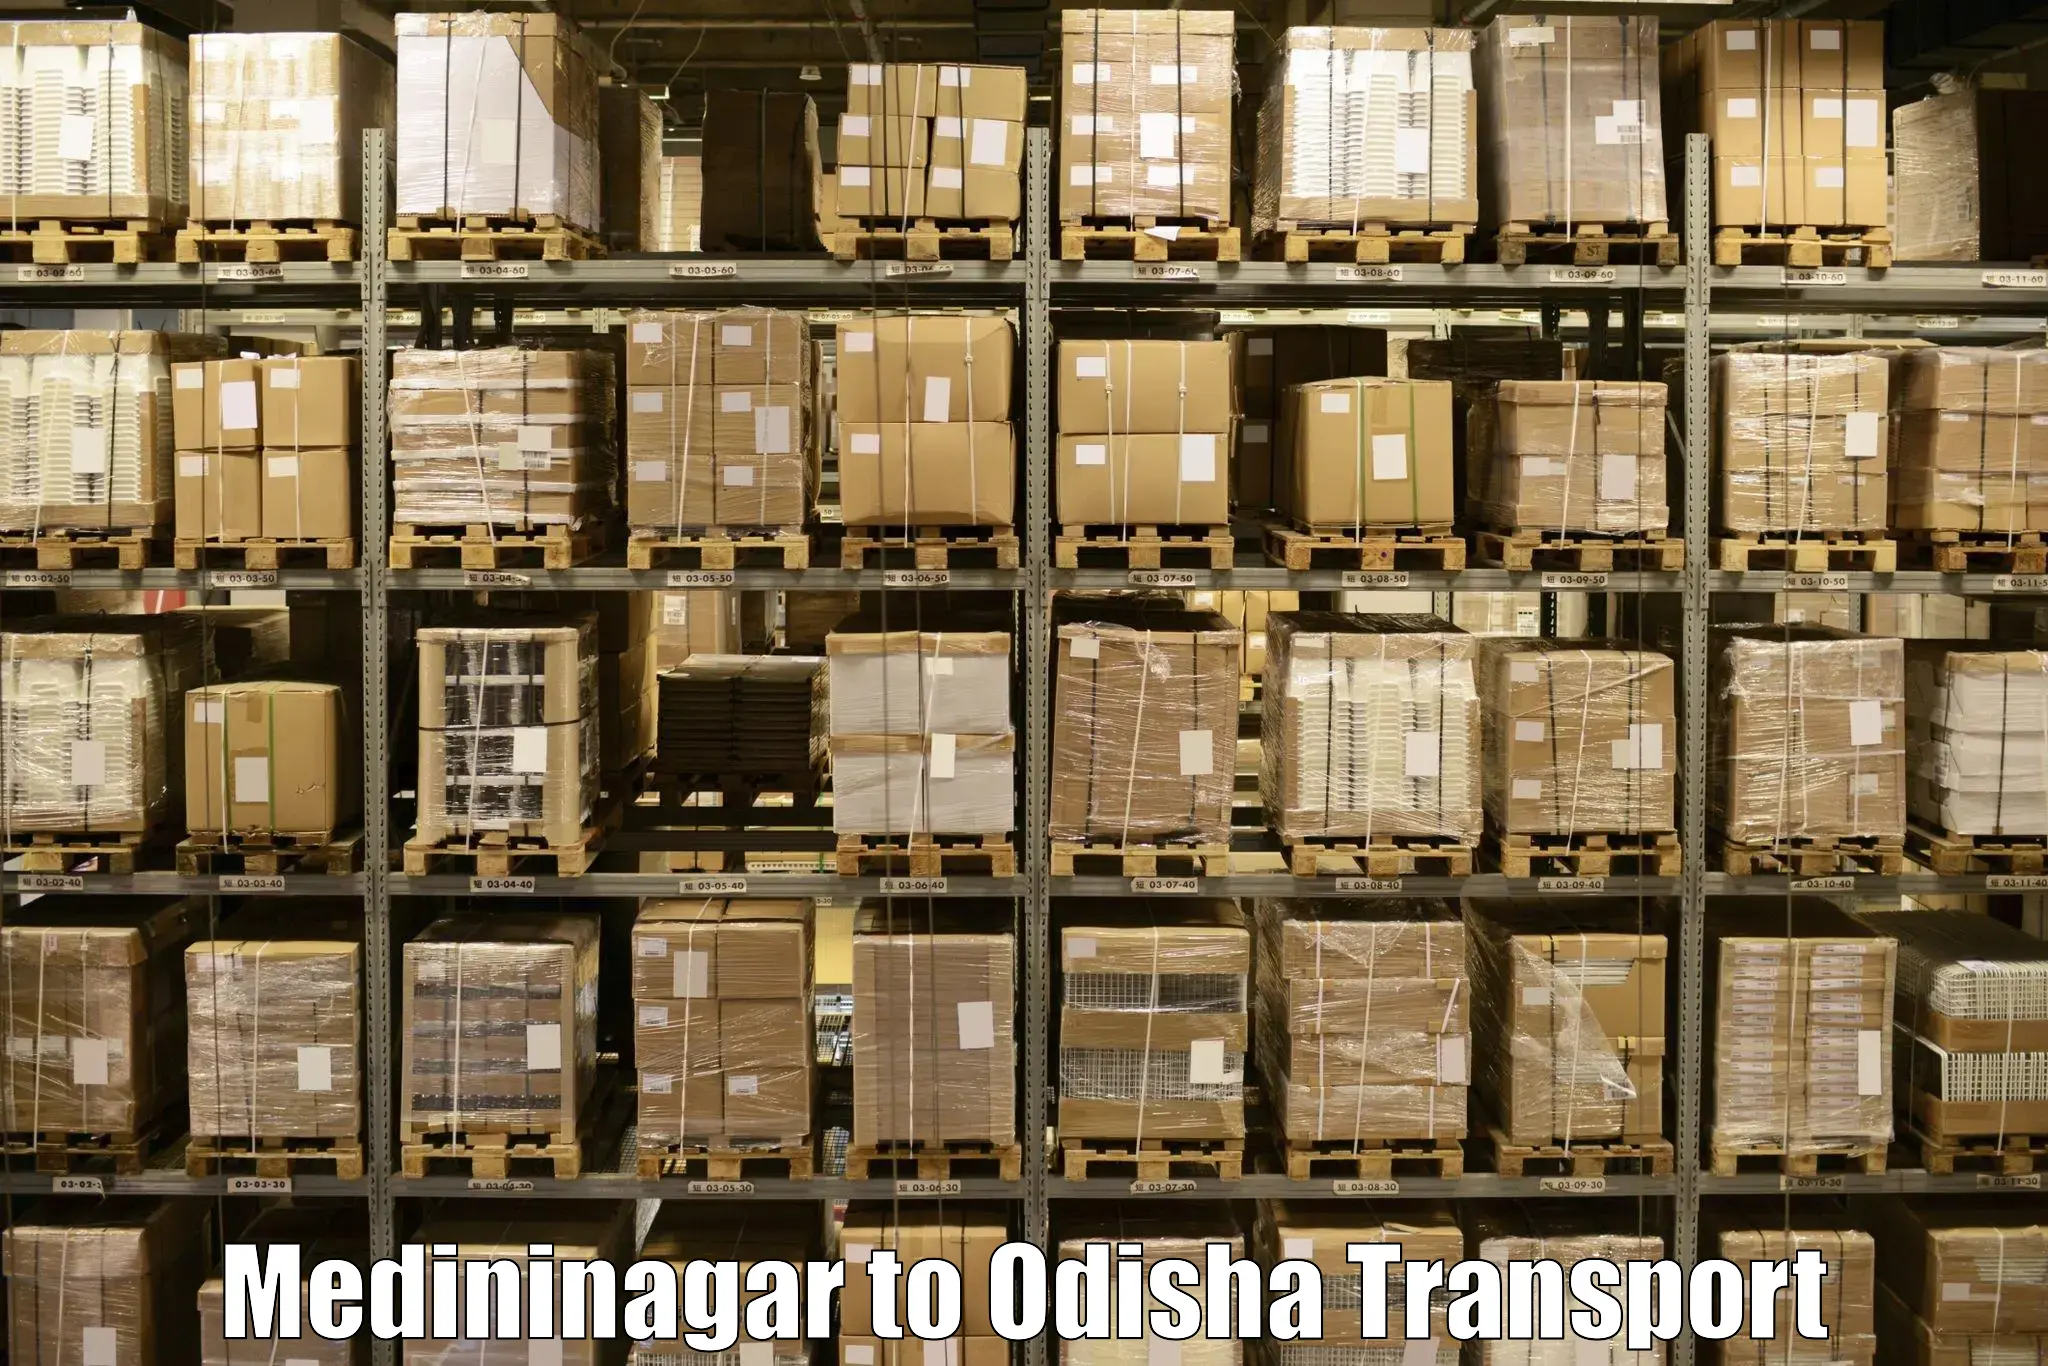 Transport shared services Medininagar to Polasara